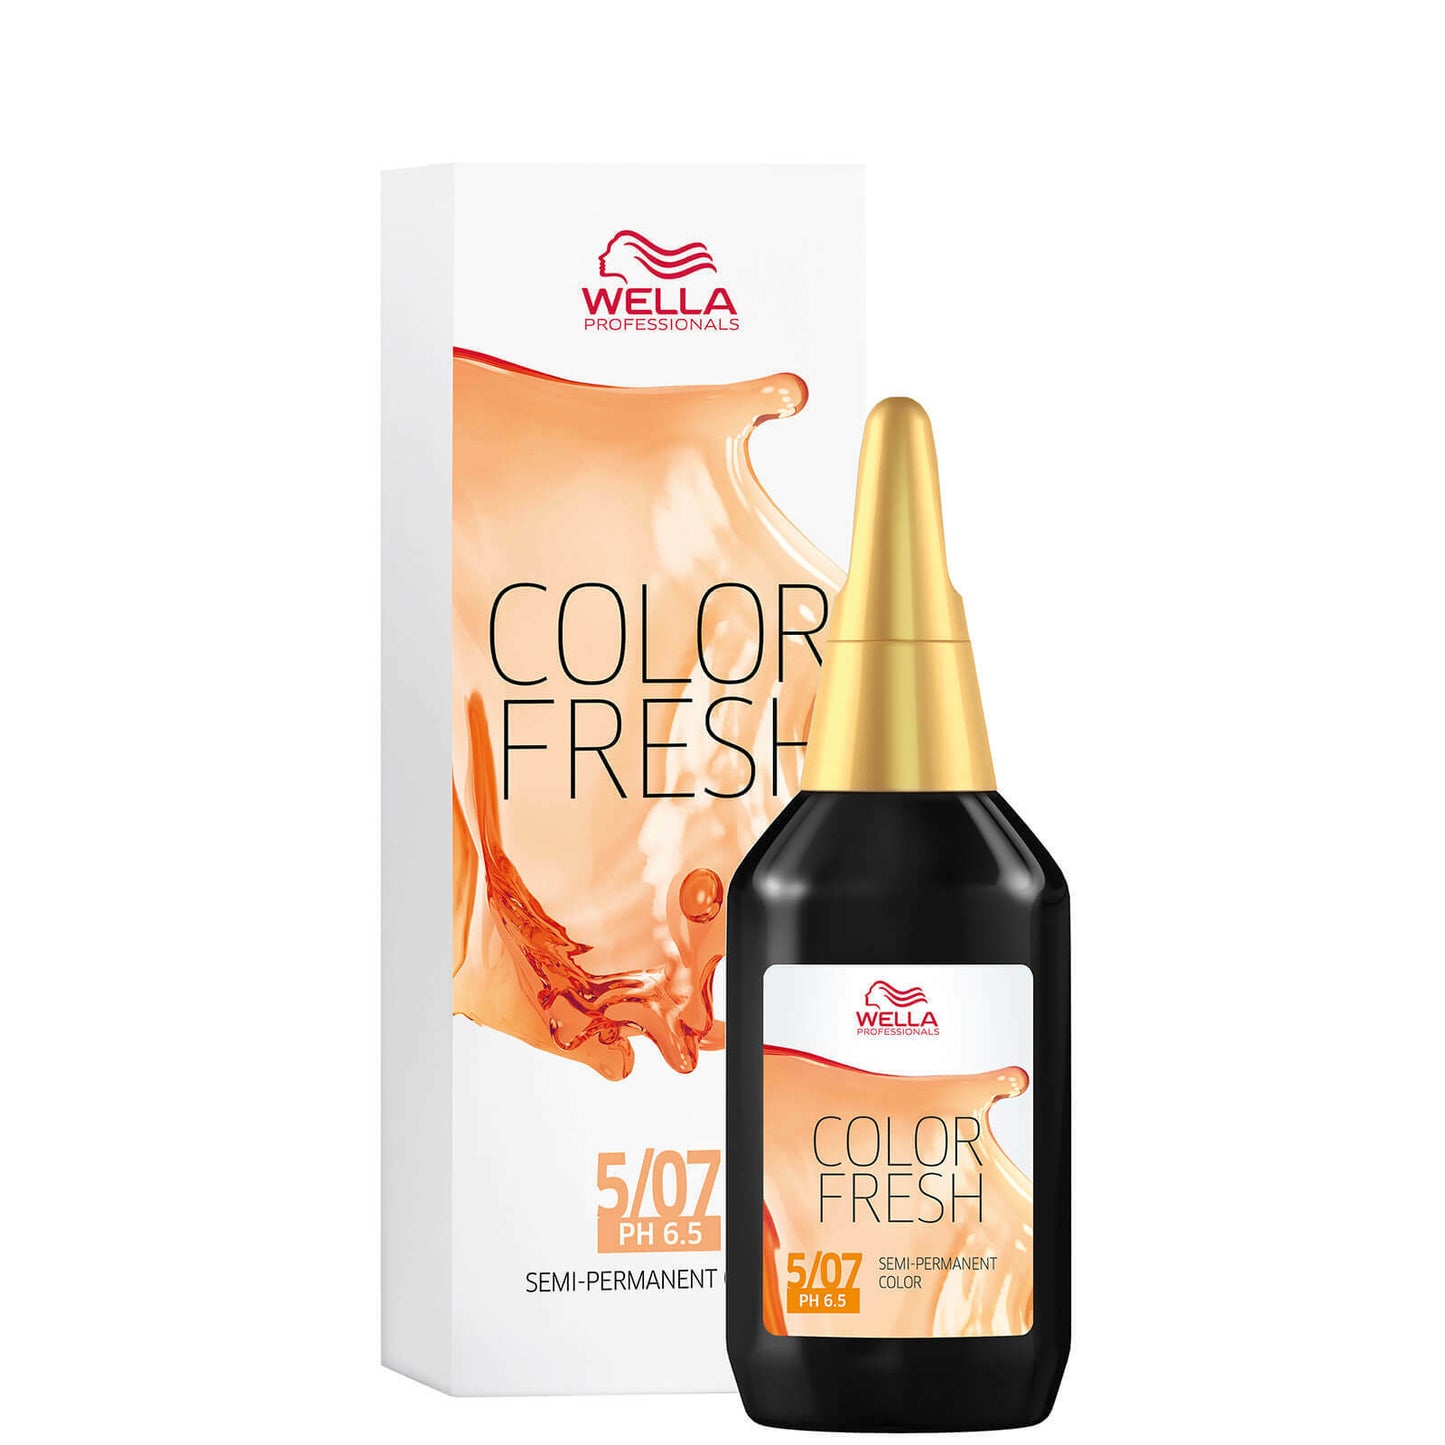 Wella Colour Fresh Semi Permanent Hair Dye 5/07 Natural Light Brown